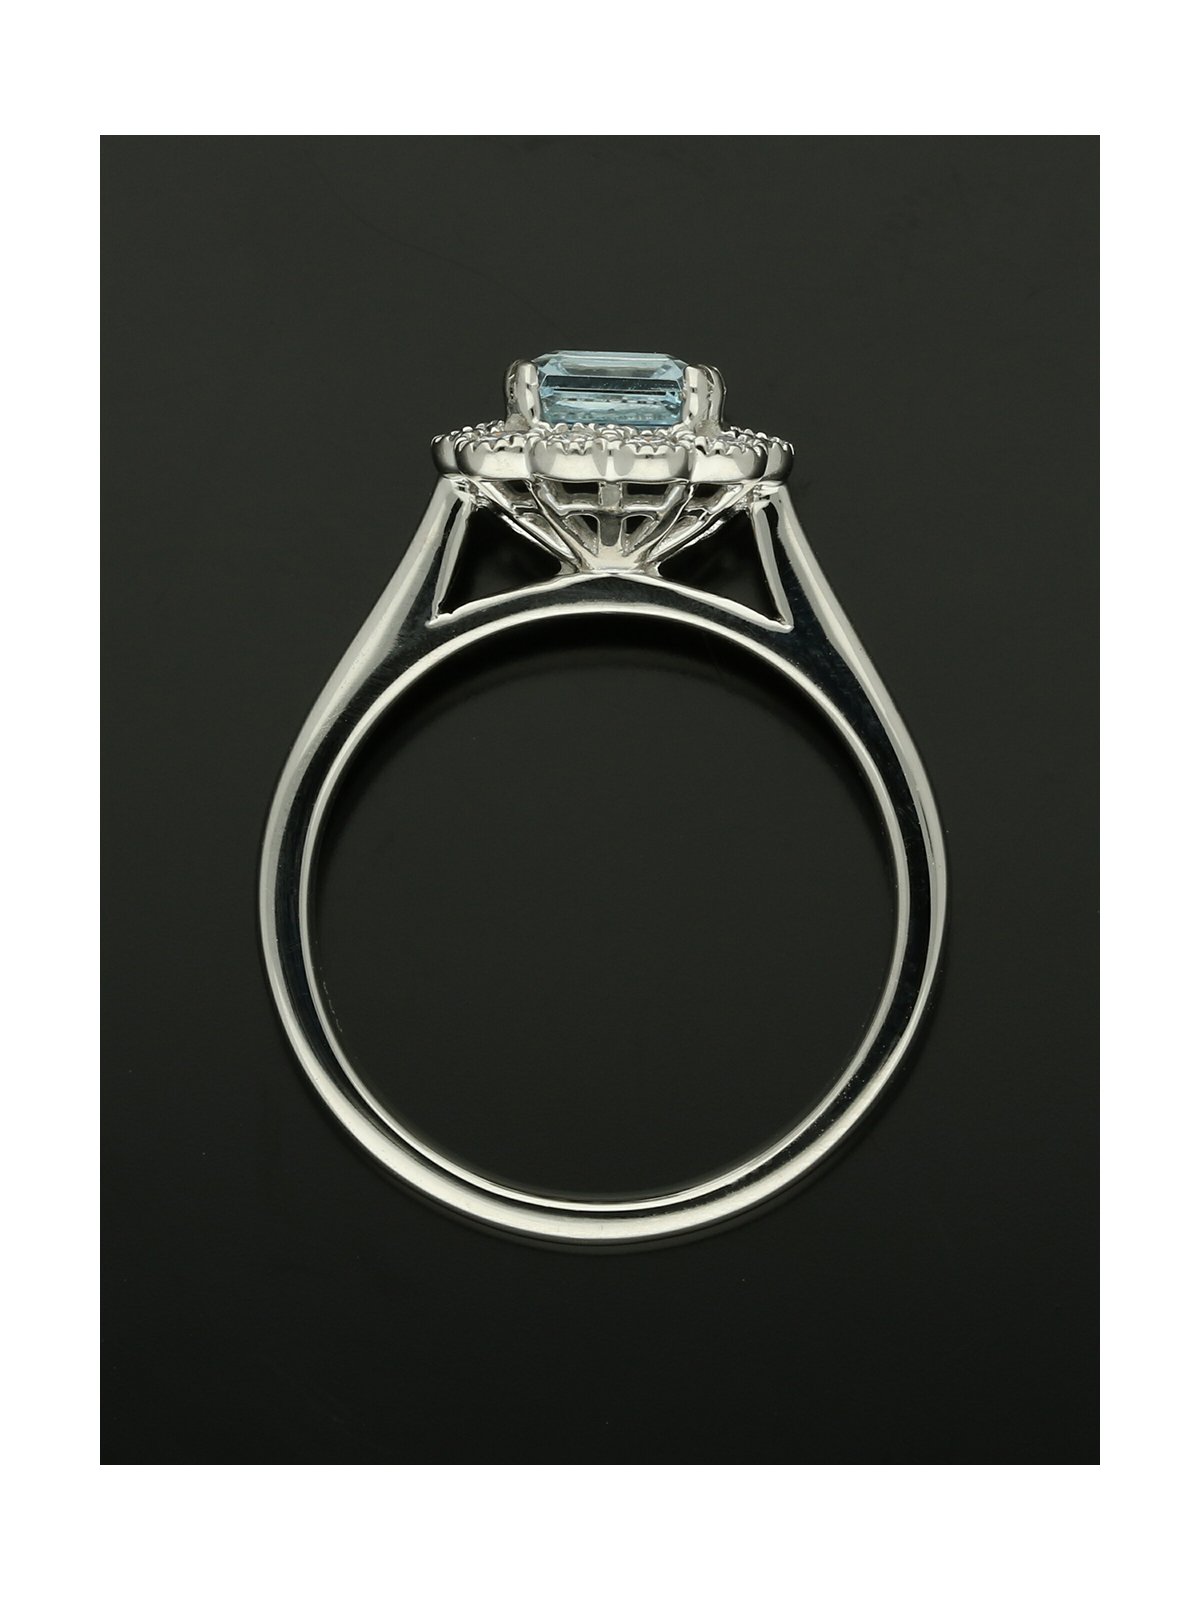 Aquamarine & Diamond Cluster Ring in Platinum